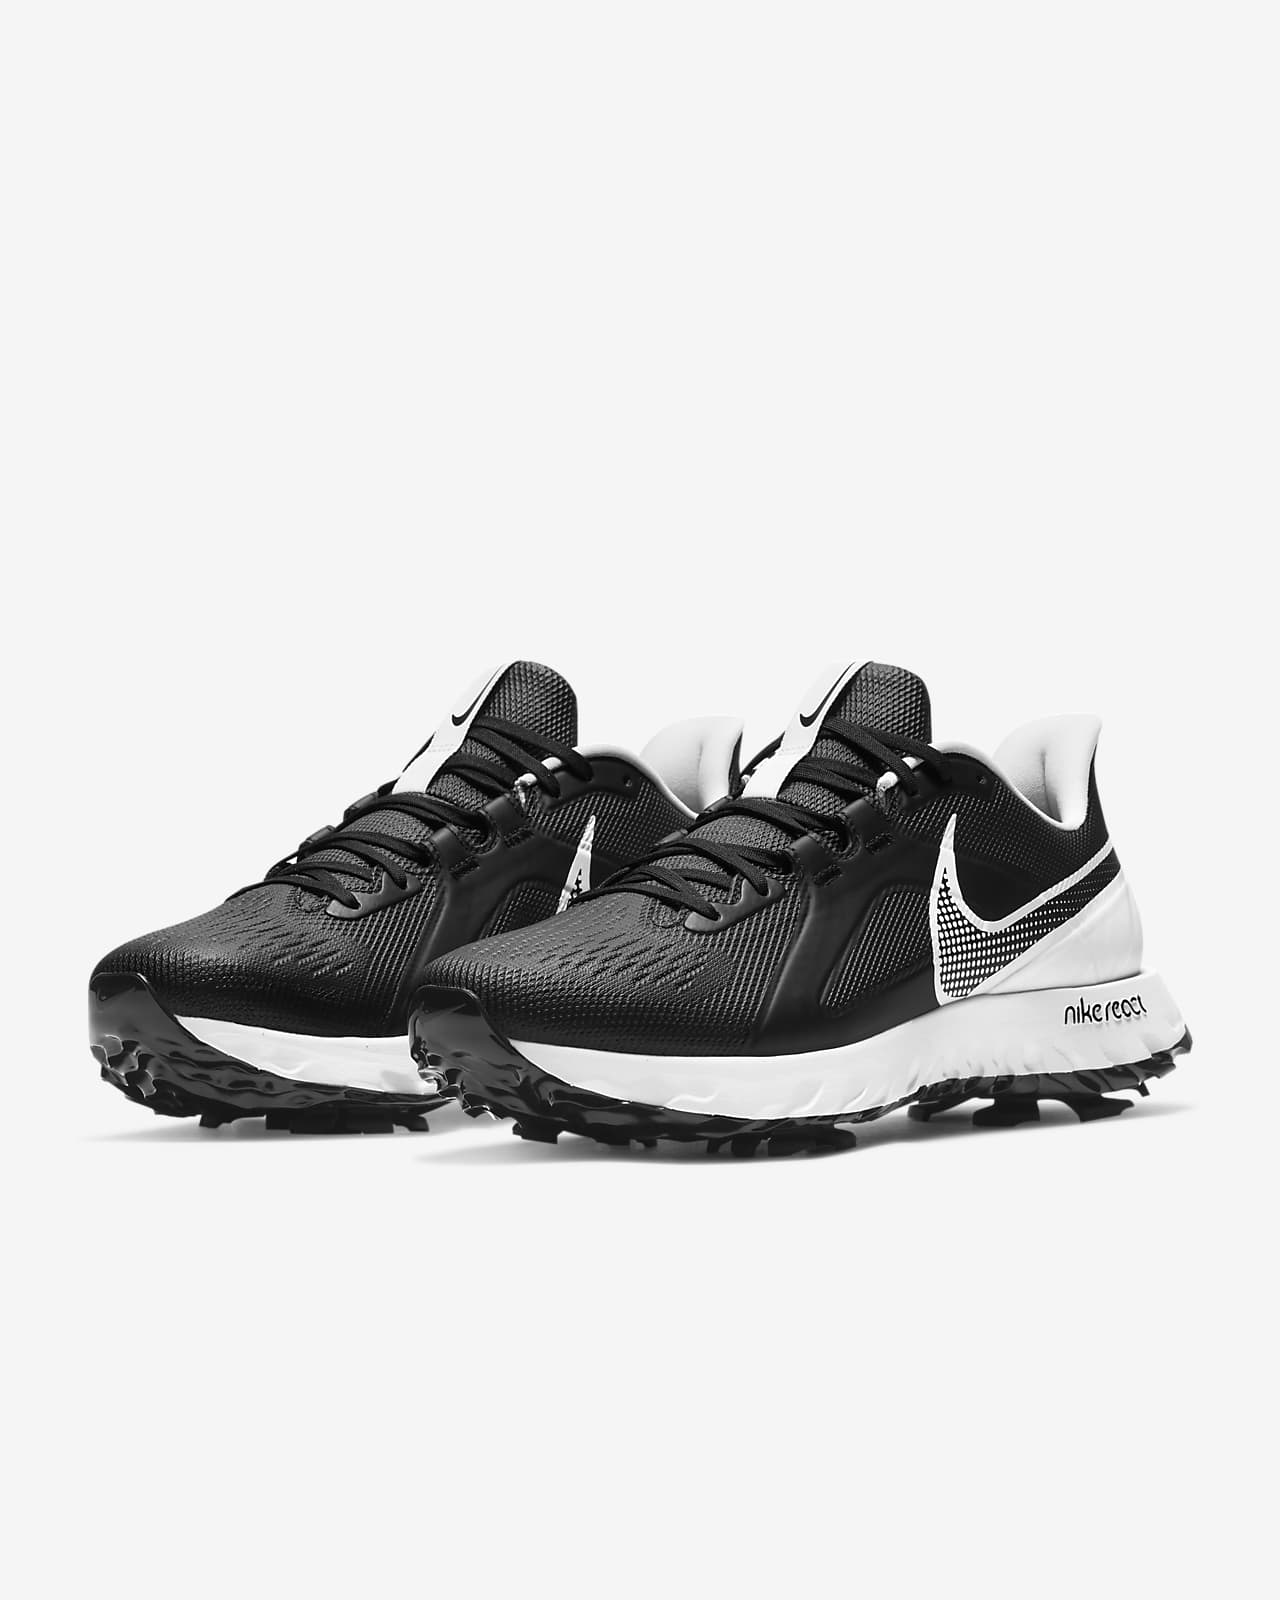 Nike React Infinity Pro Golf Shoe. Nike MA